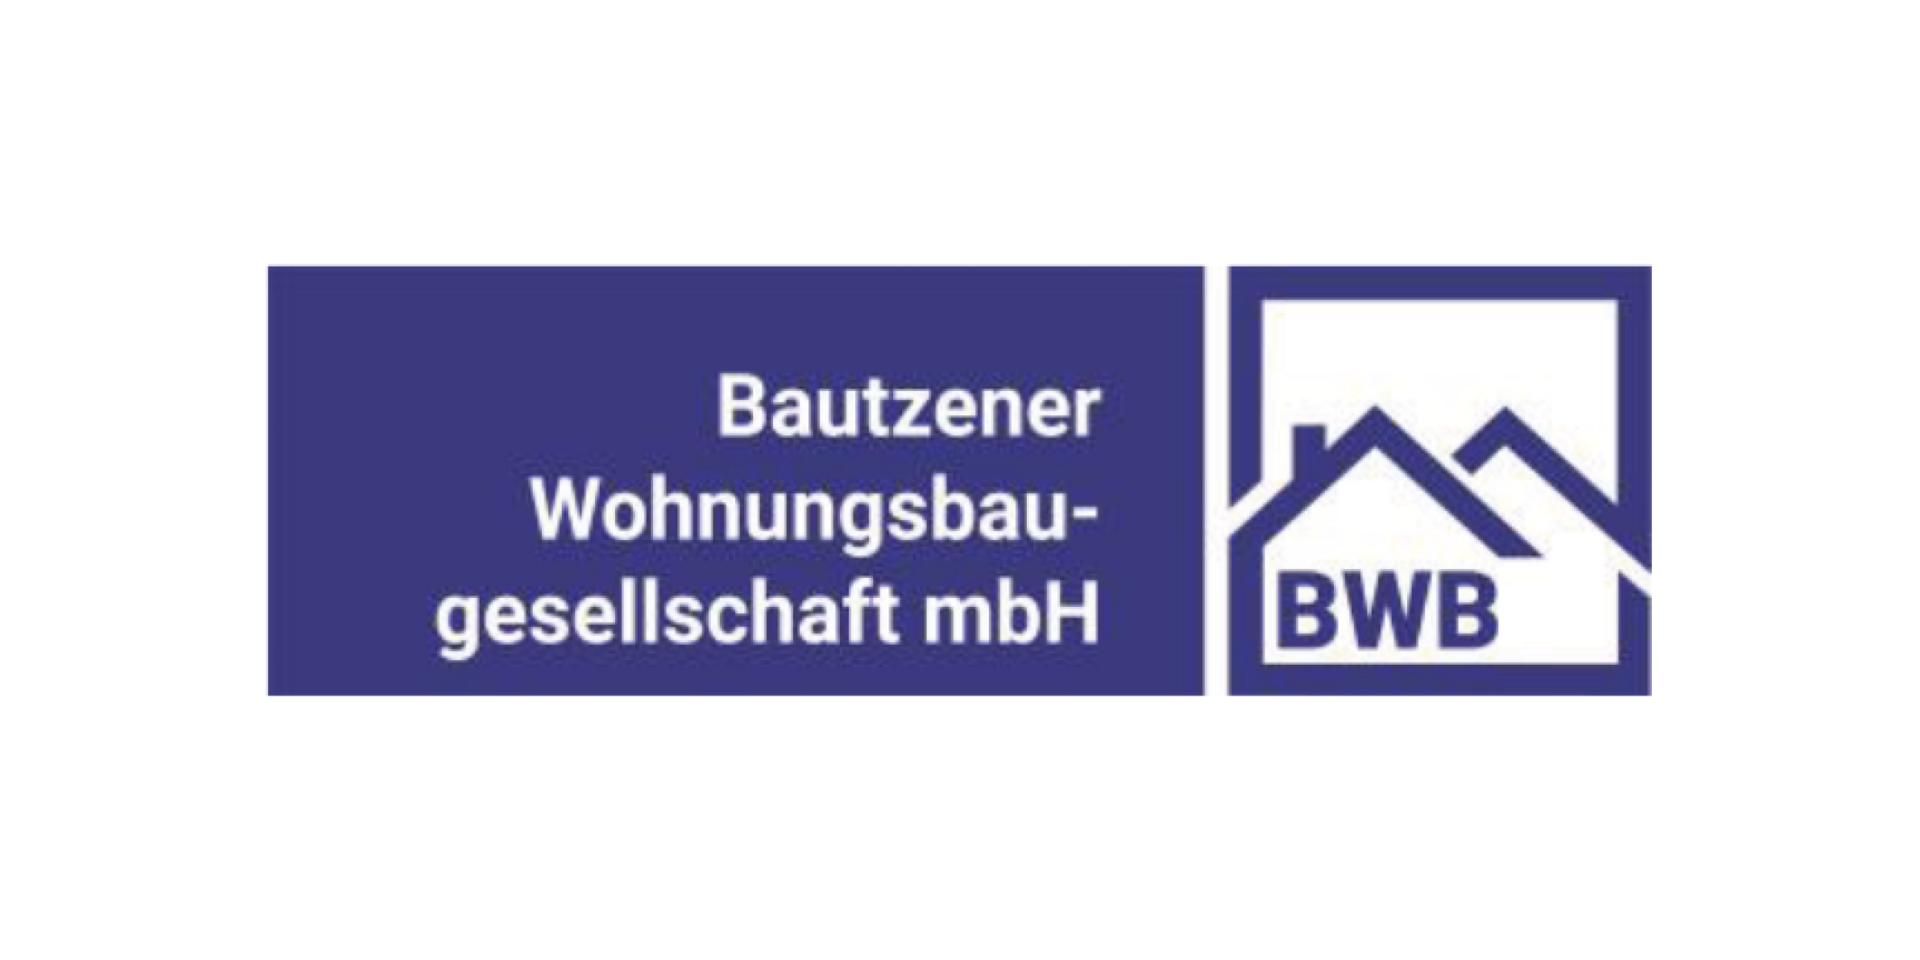 BWB - Bautzener Wohnungsbaugesellschaft mbH